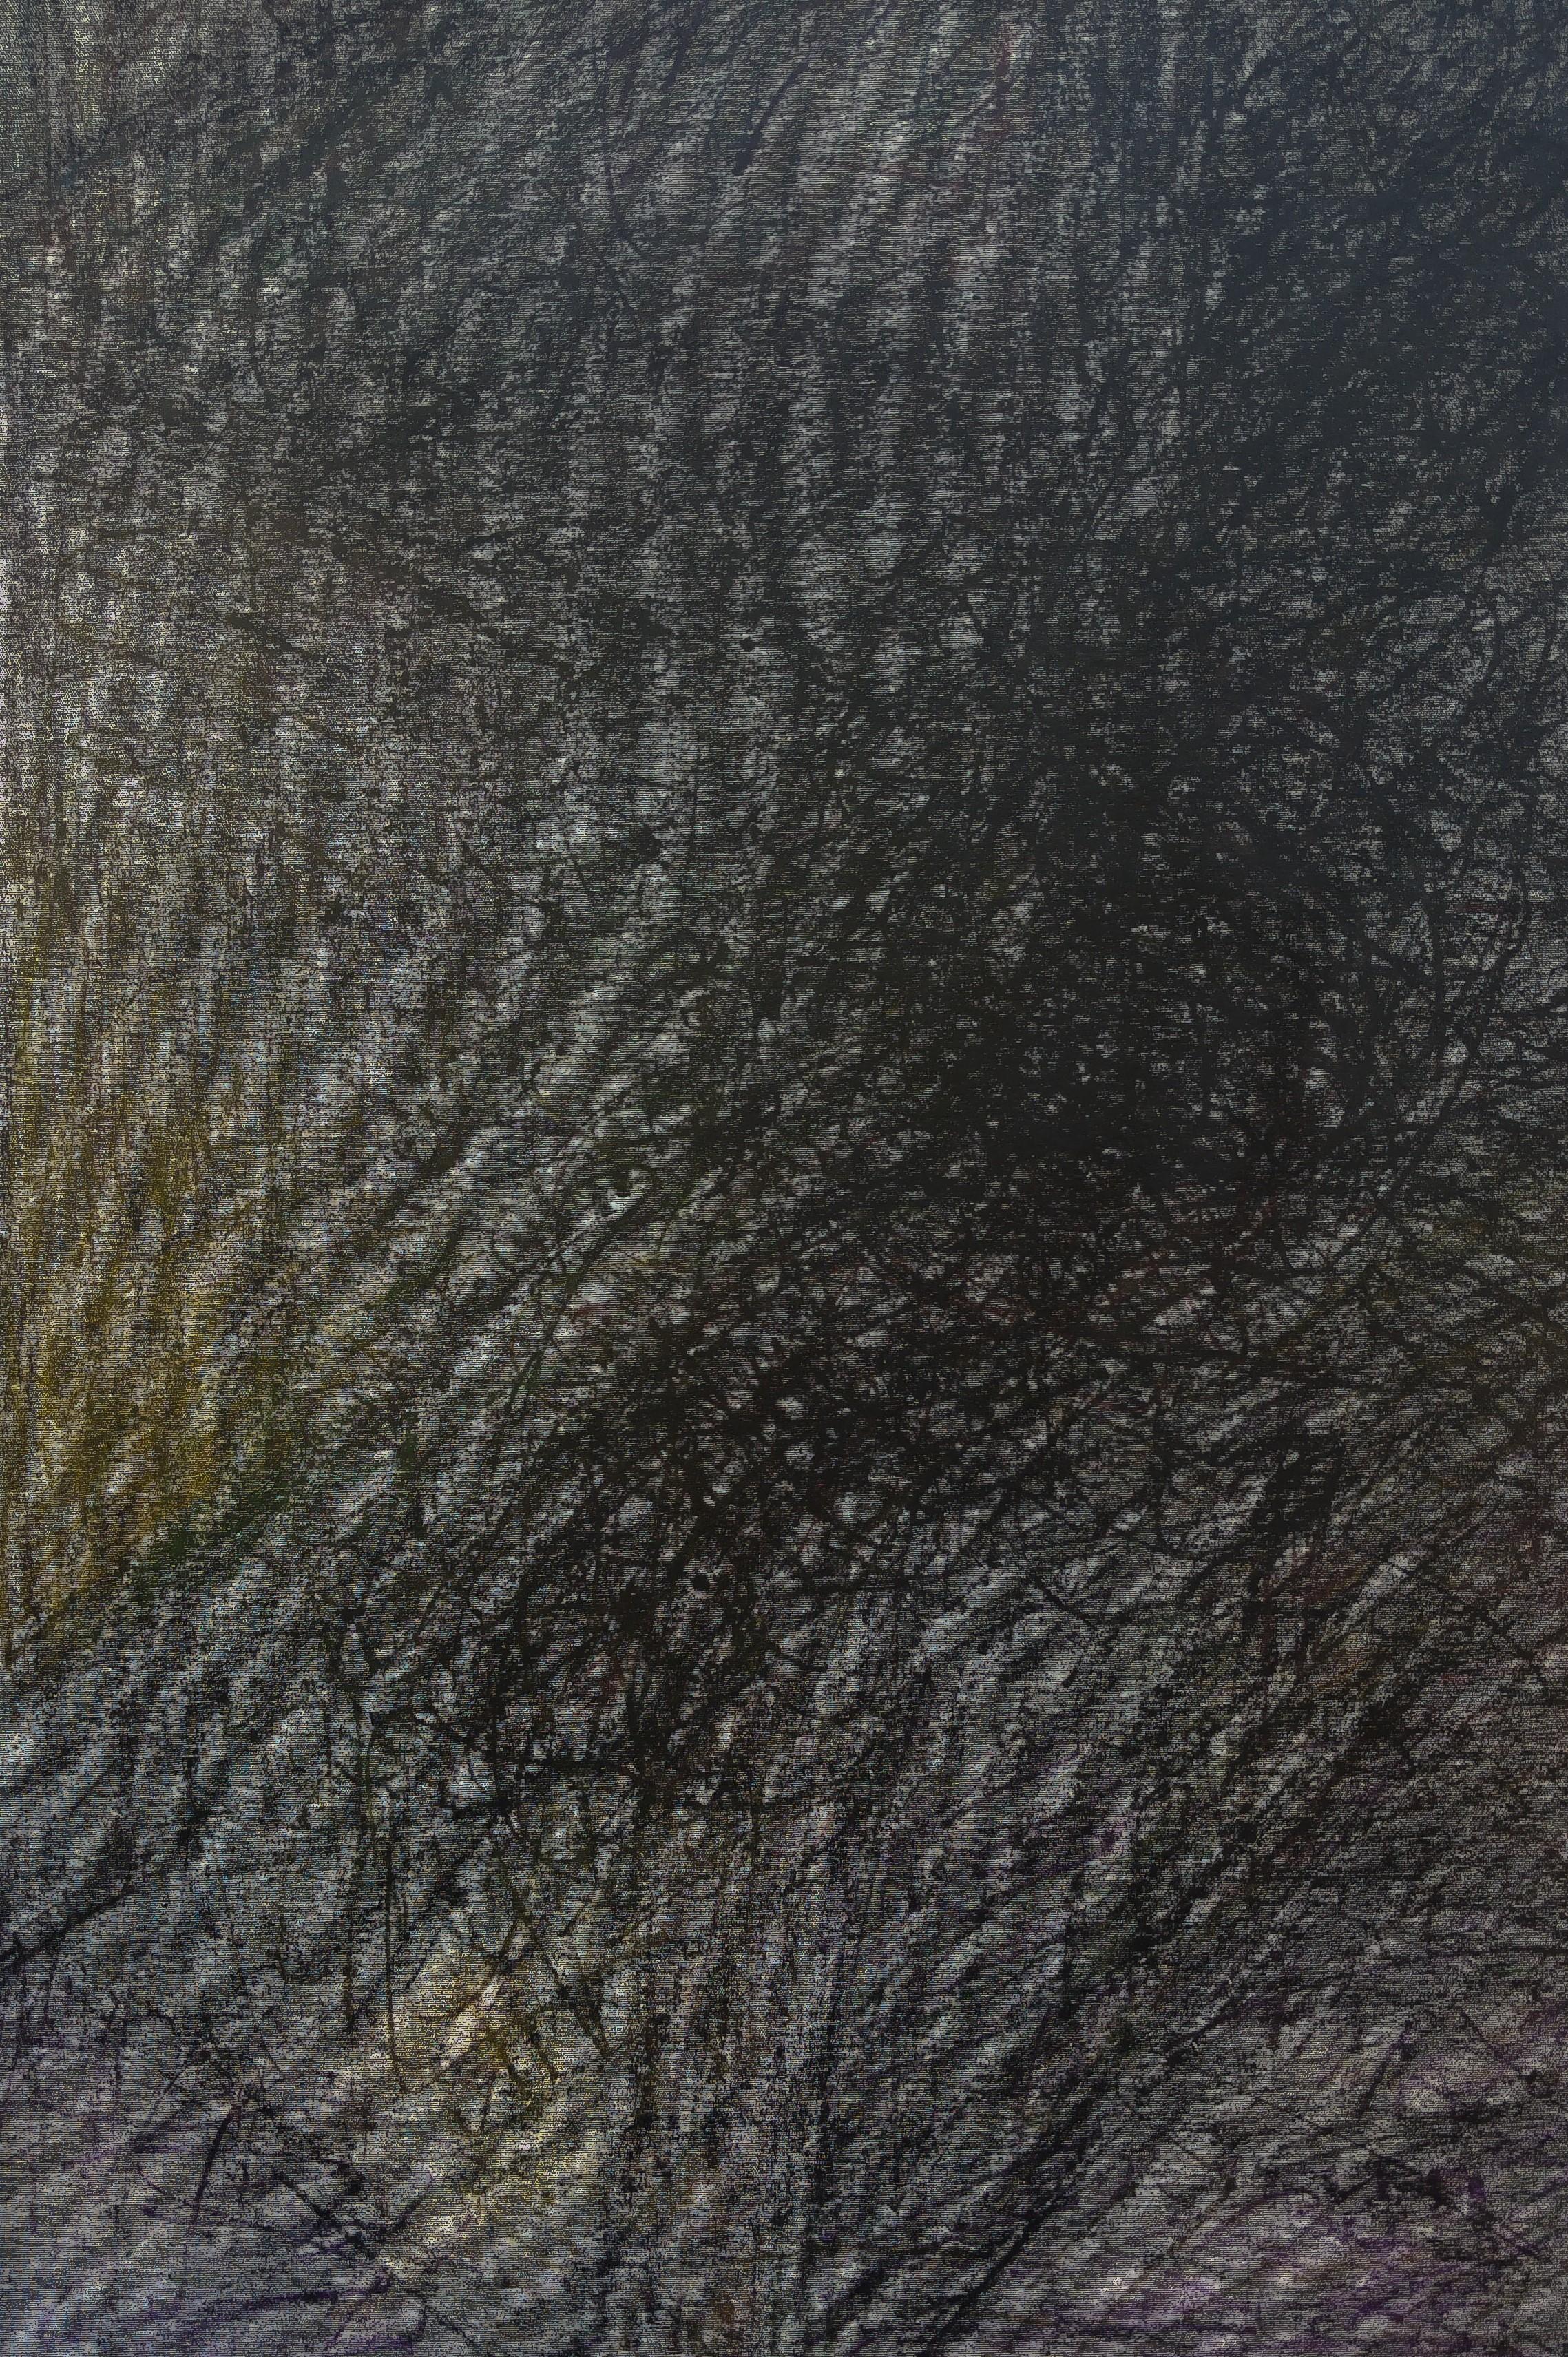 Ohne Titel 02 - Zeitgenössische Kunst, Abstrakt, Geometrisch, Schwarz, geschichtet – Painting von Zsolt Berszán